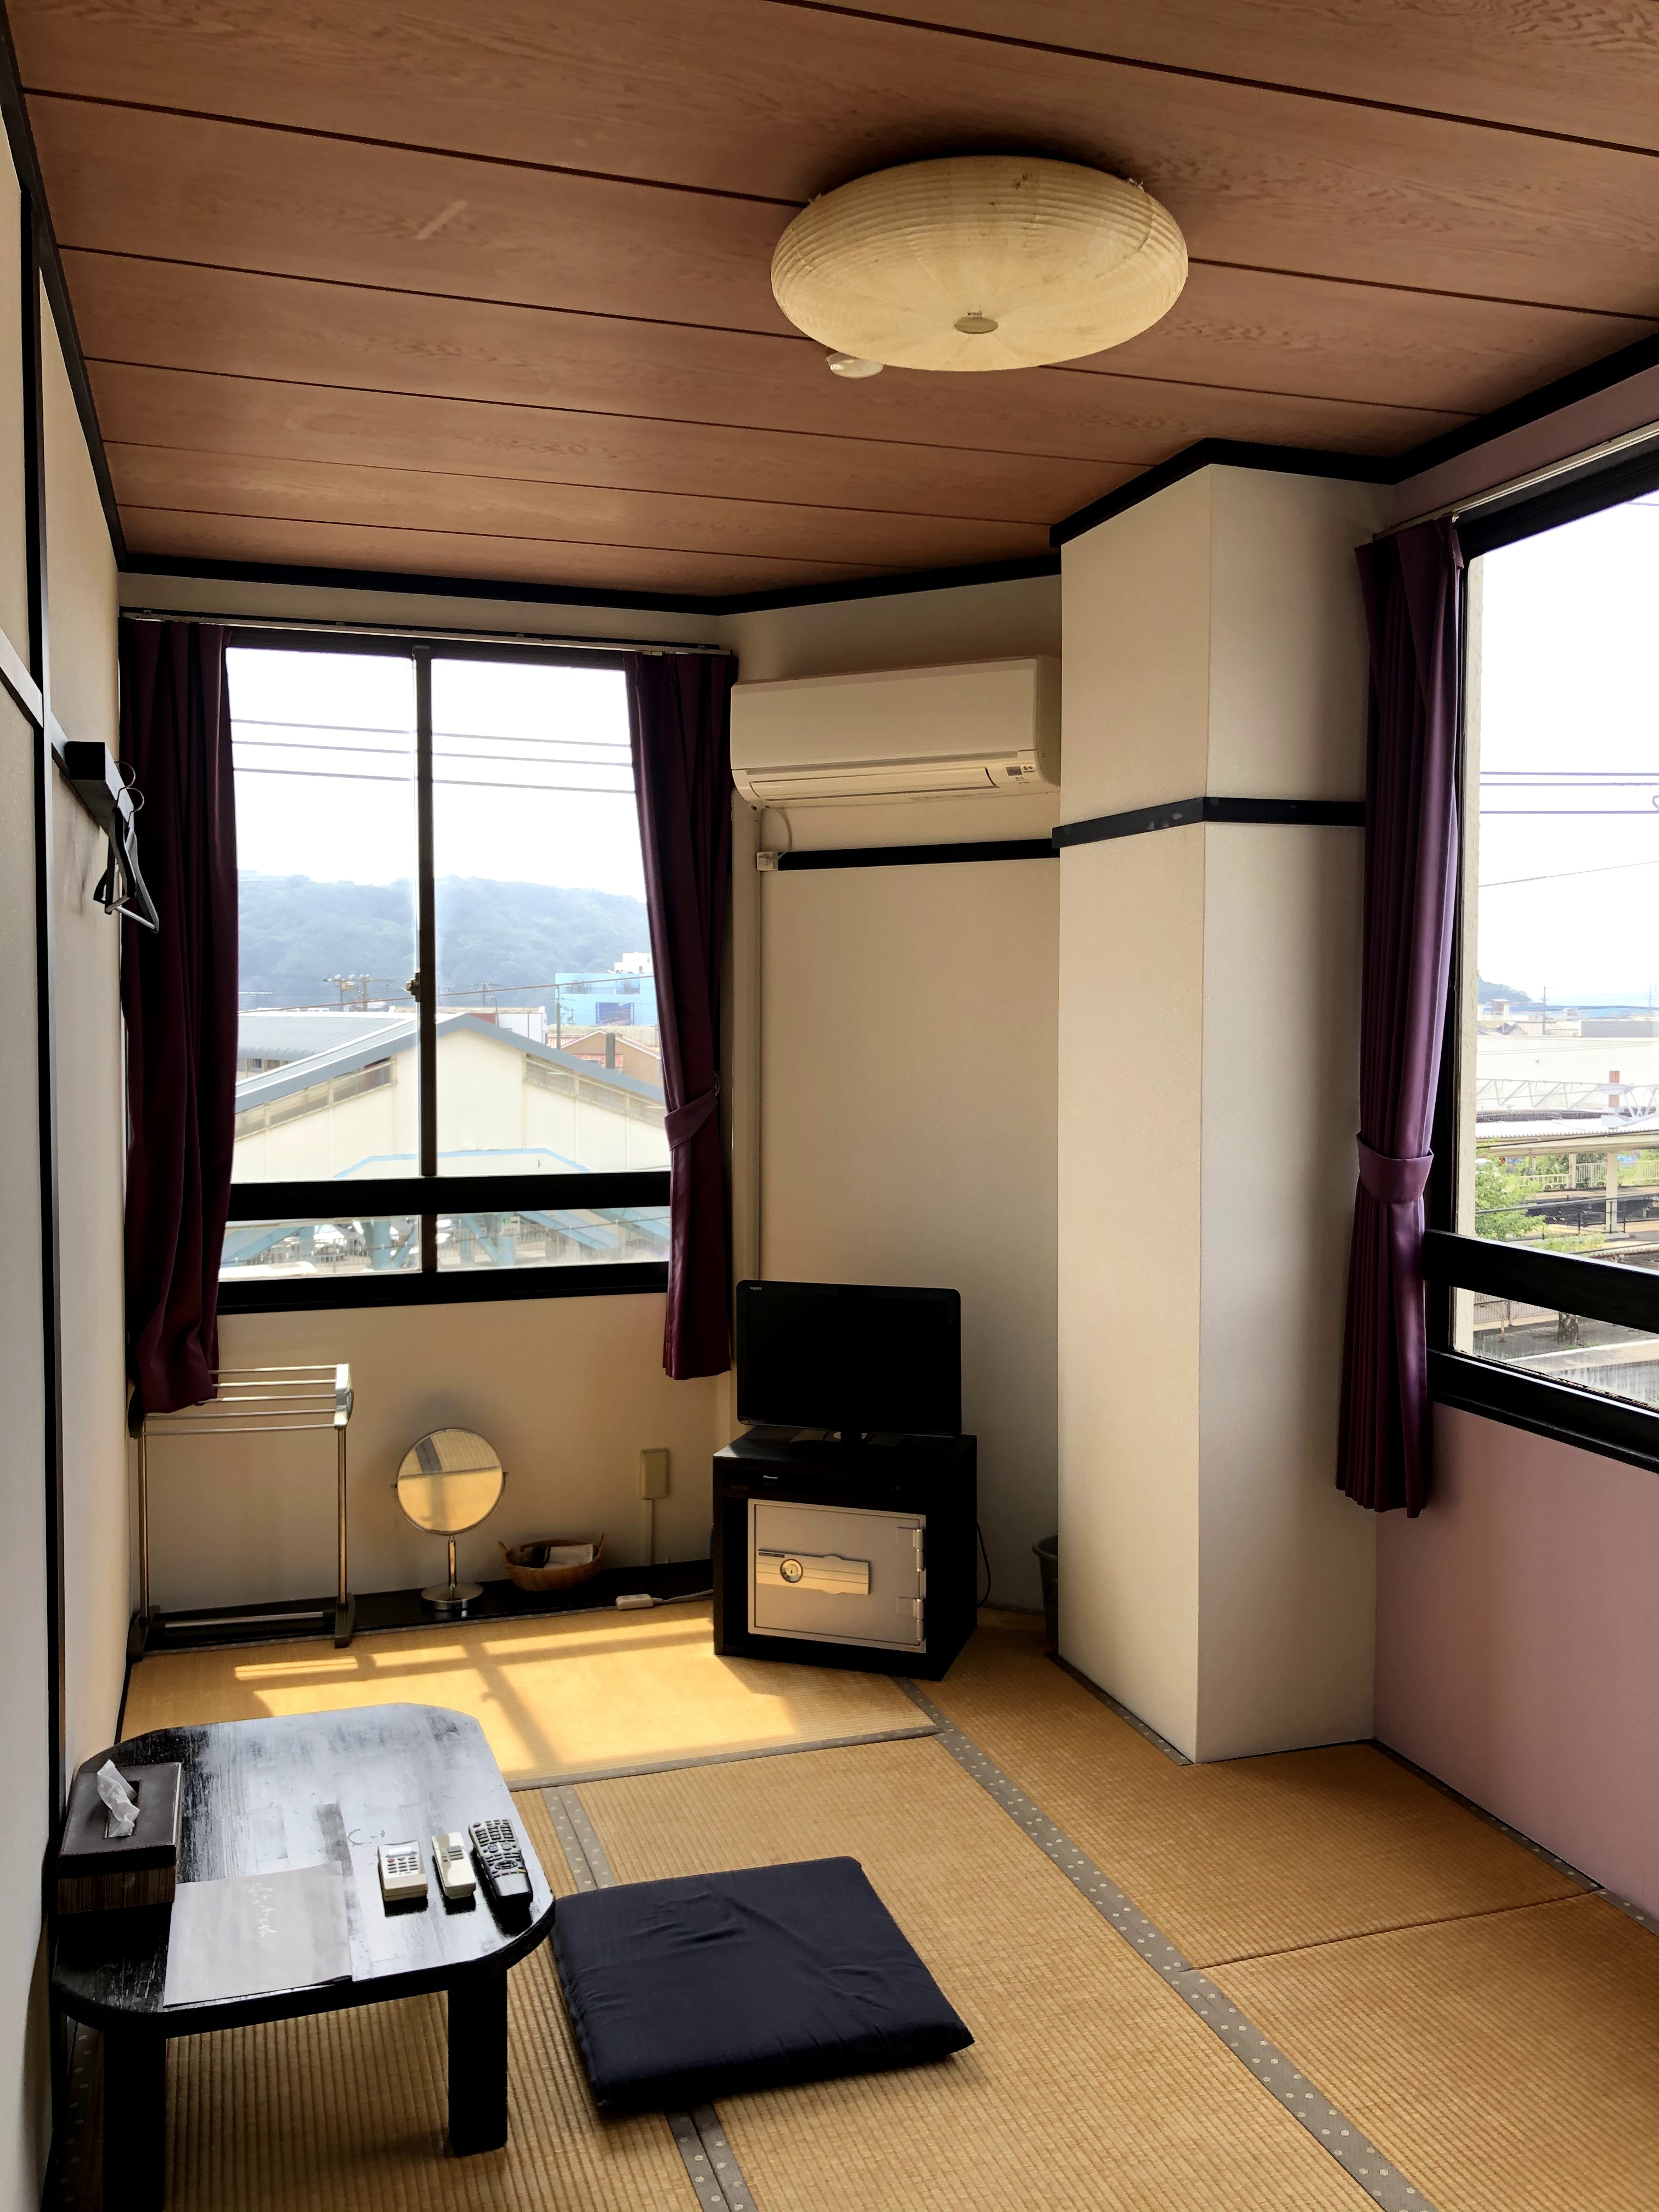 5 tatami mats [Japanese-style room] No smoking